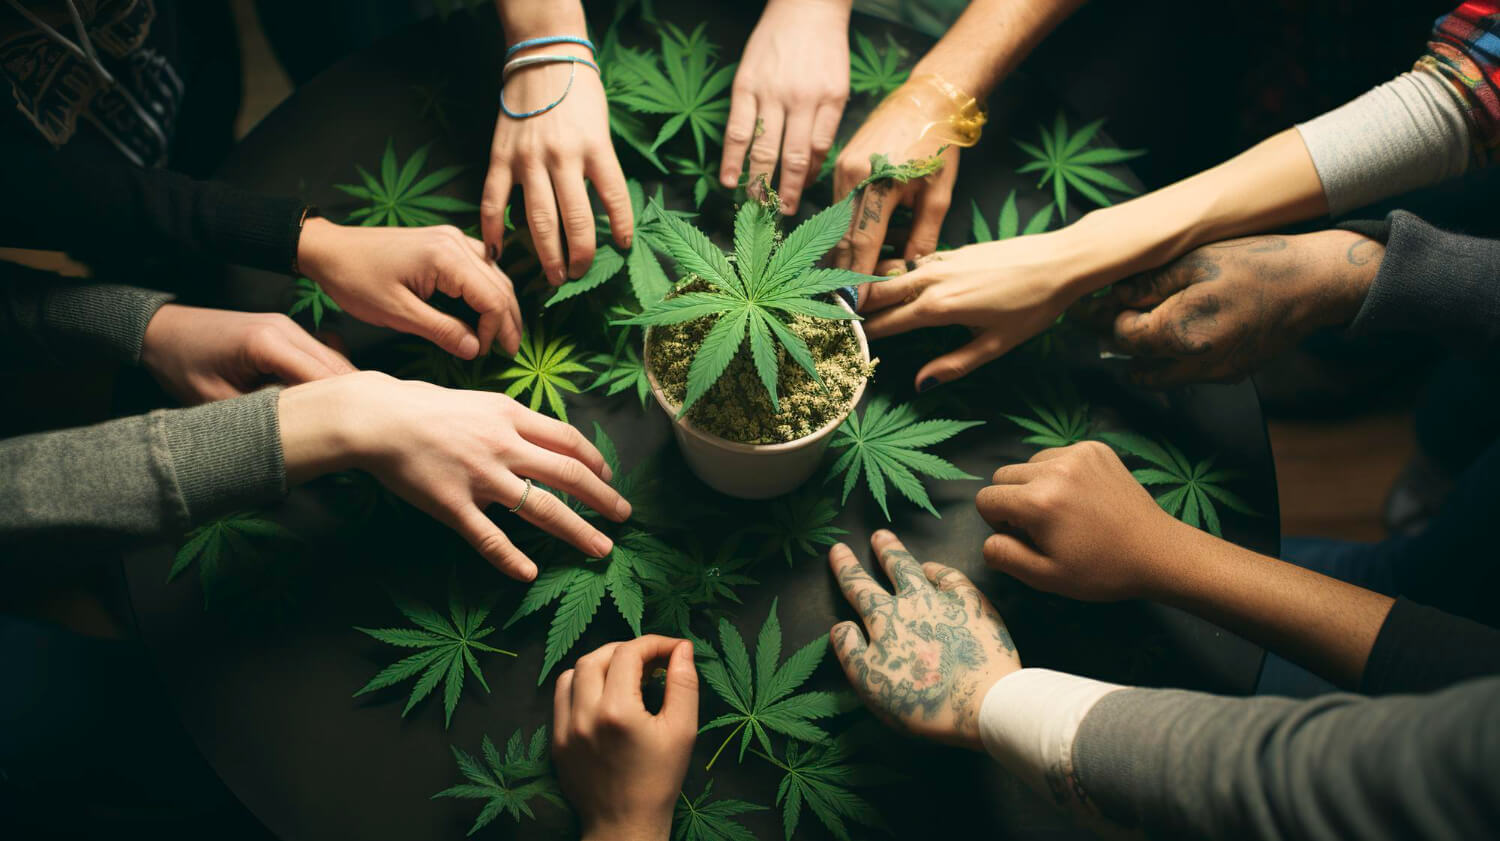 Cannabis Social Club